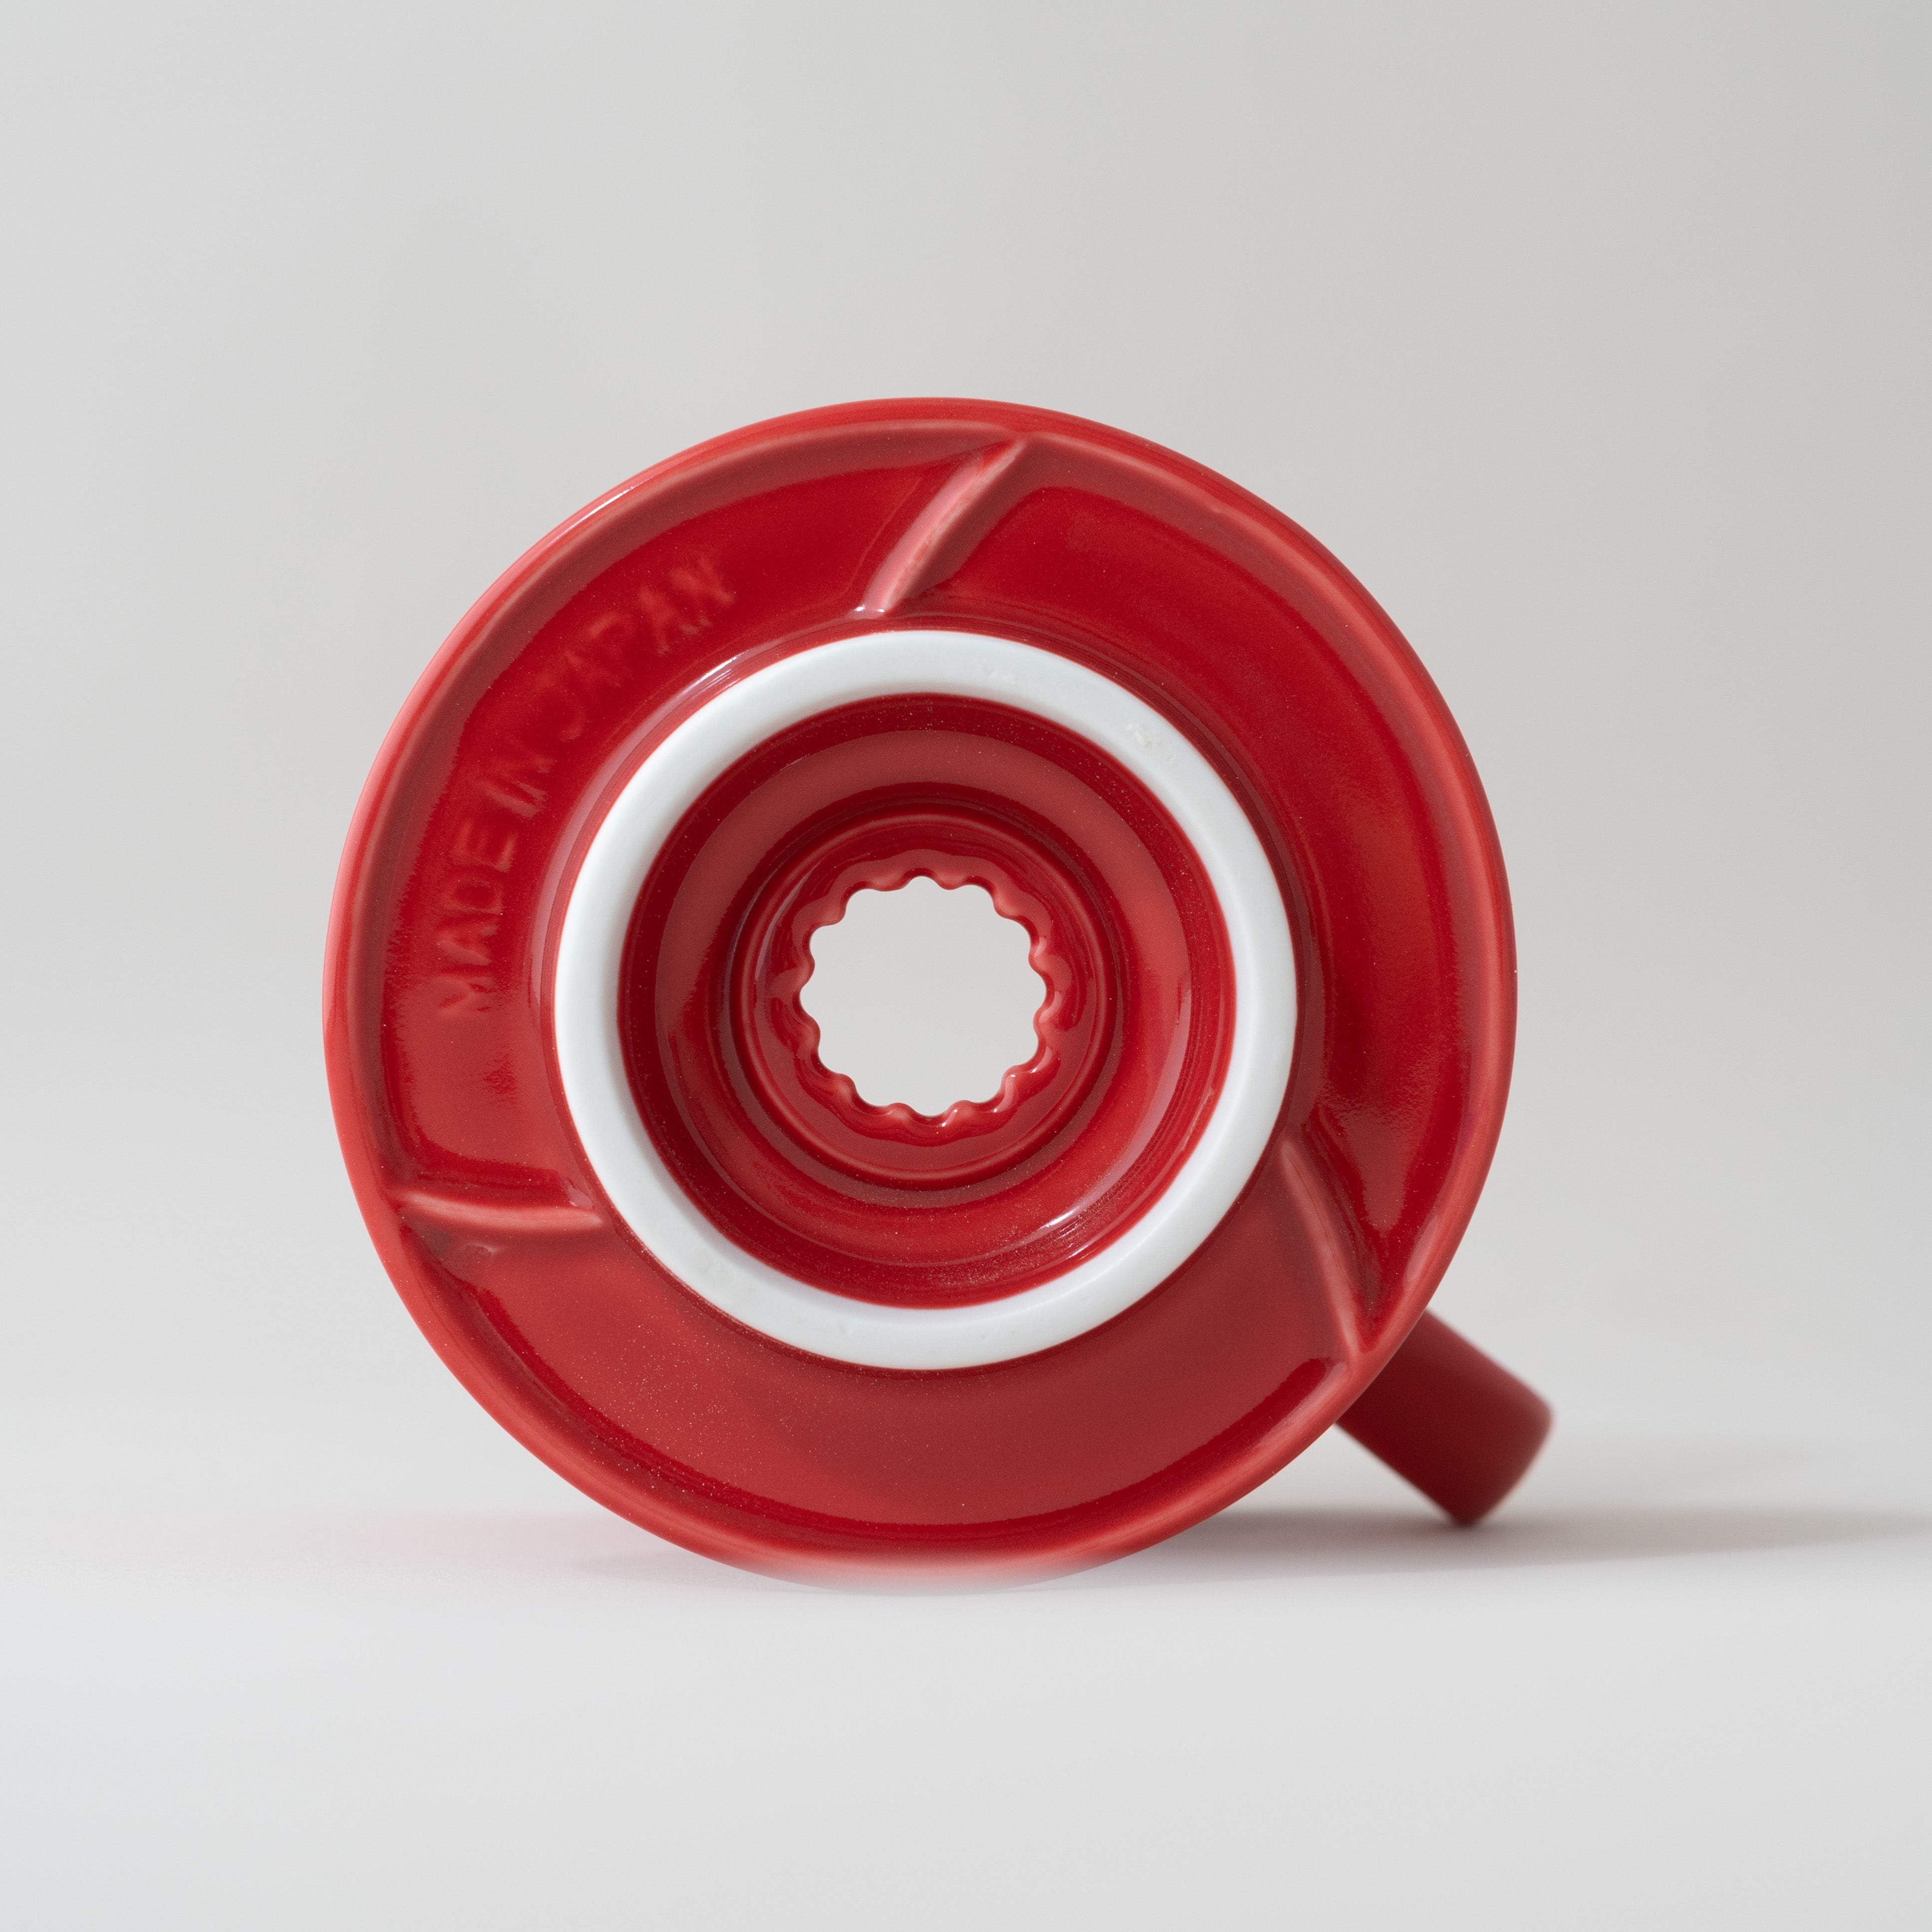 Hario Ceramic v60 02 Red Coffee Dripper